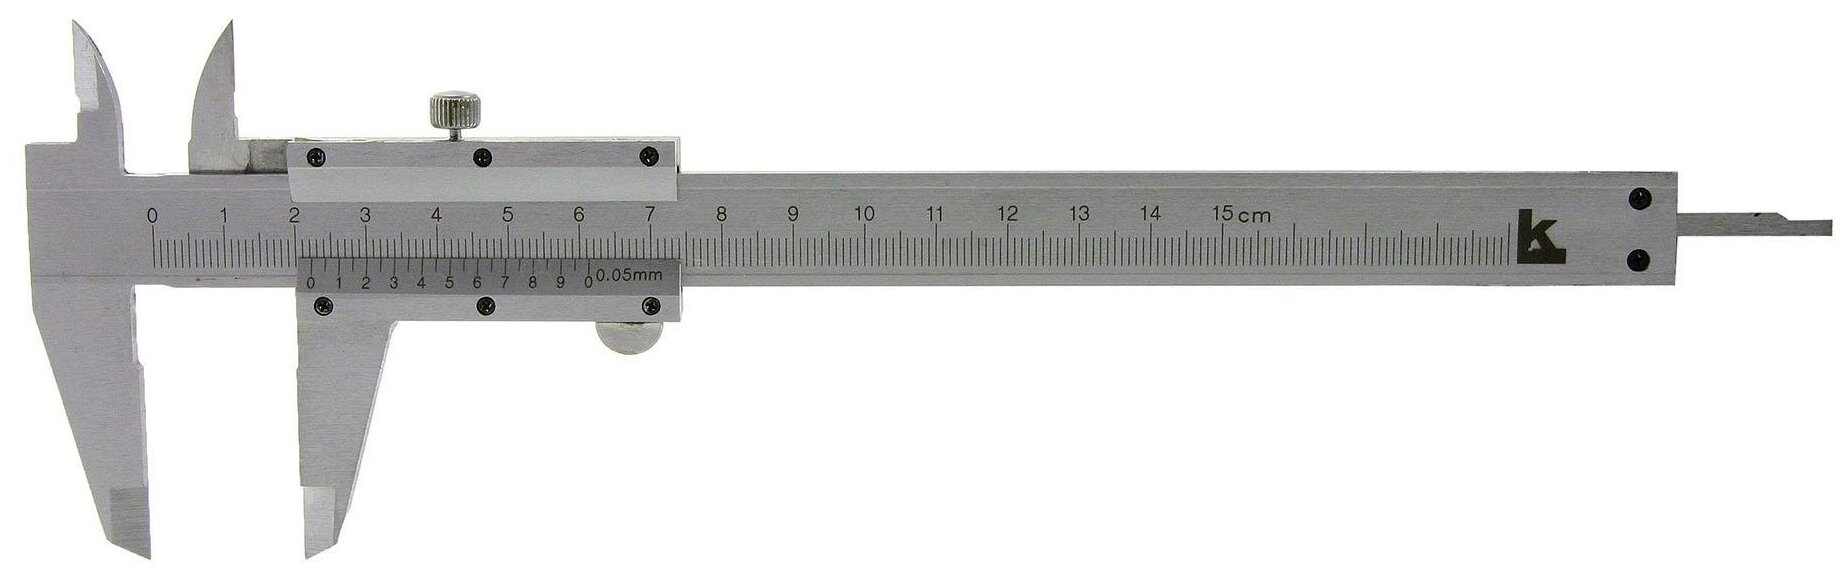 Нониусный штангенциркуль КАЛИБРОН 70450 250 мм 0.05 мм